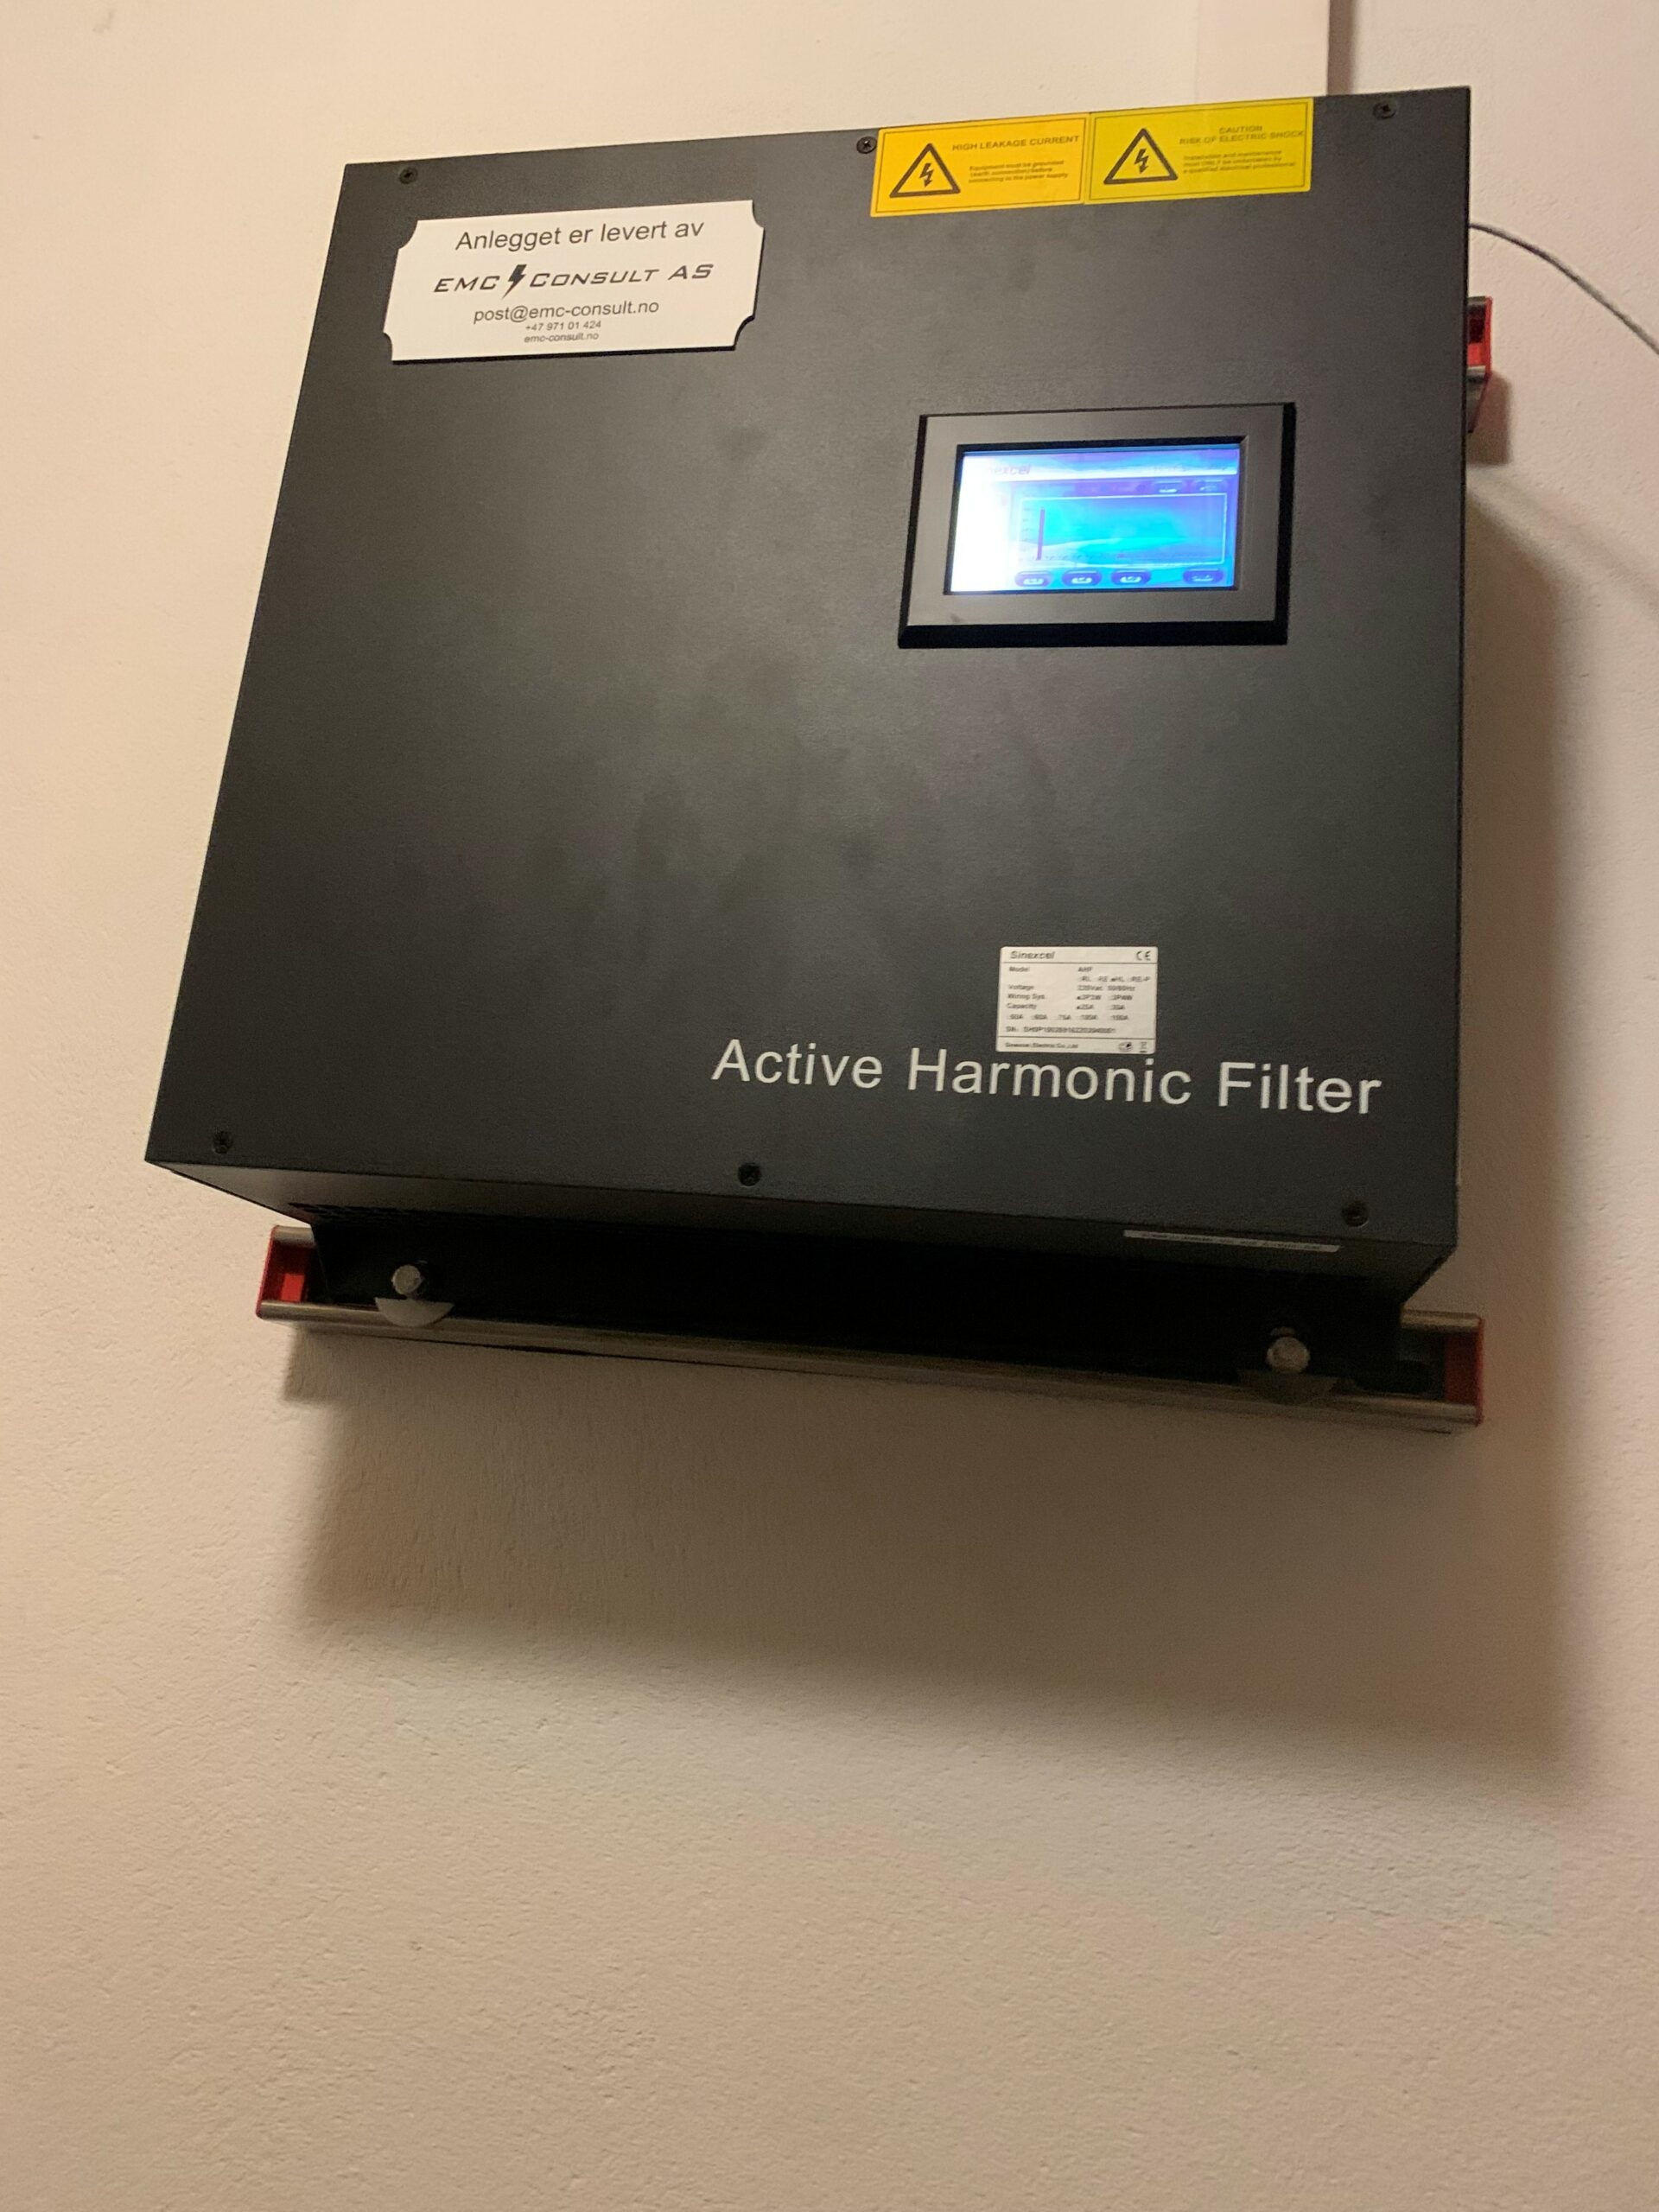 Aktive filter er en avansert strøm generator som bruker kraftelektronikk til å kompensere for dårlig nettkvalitet